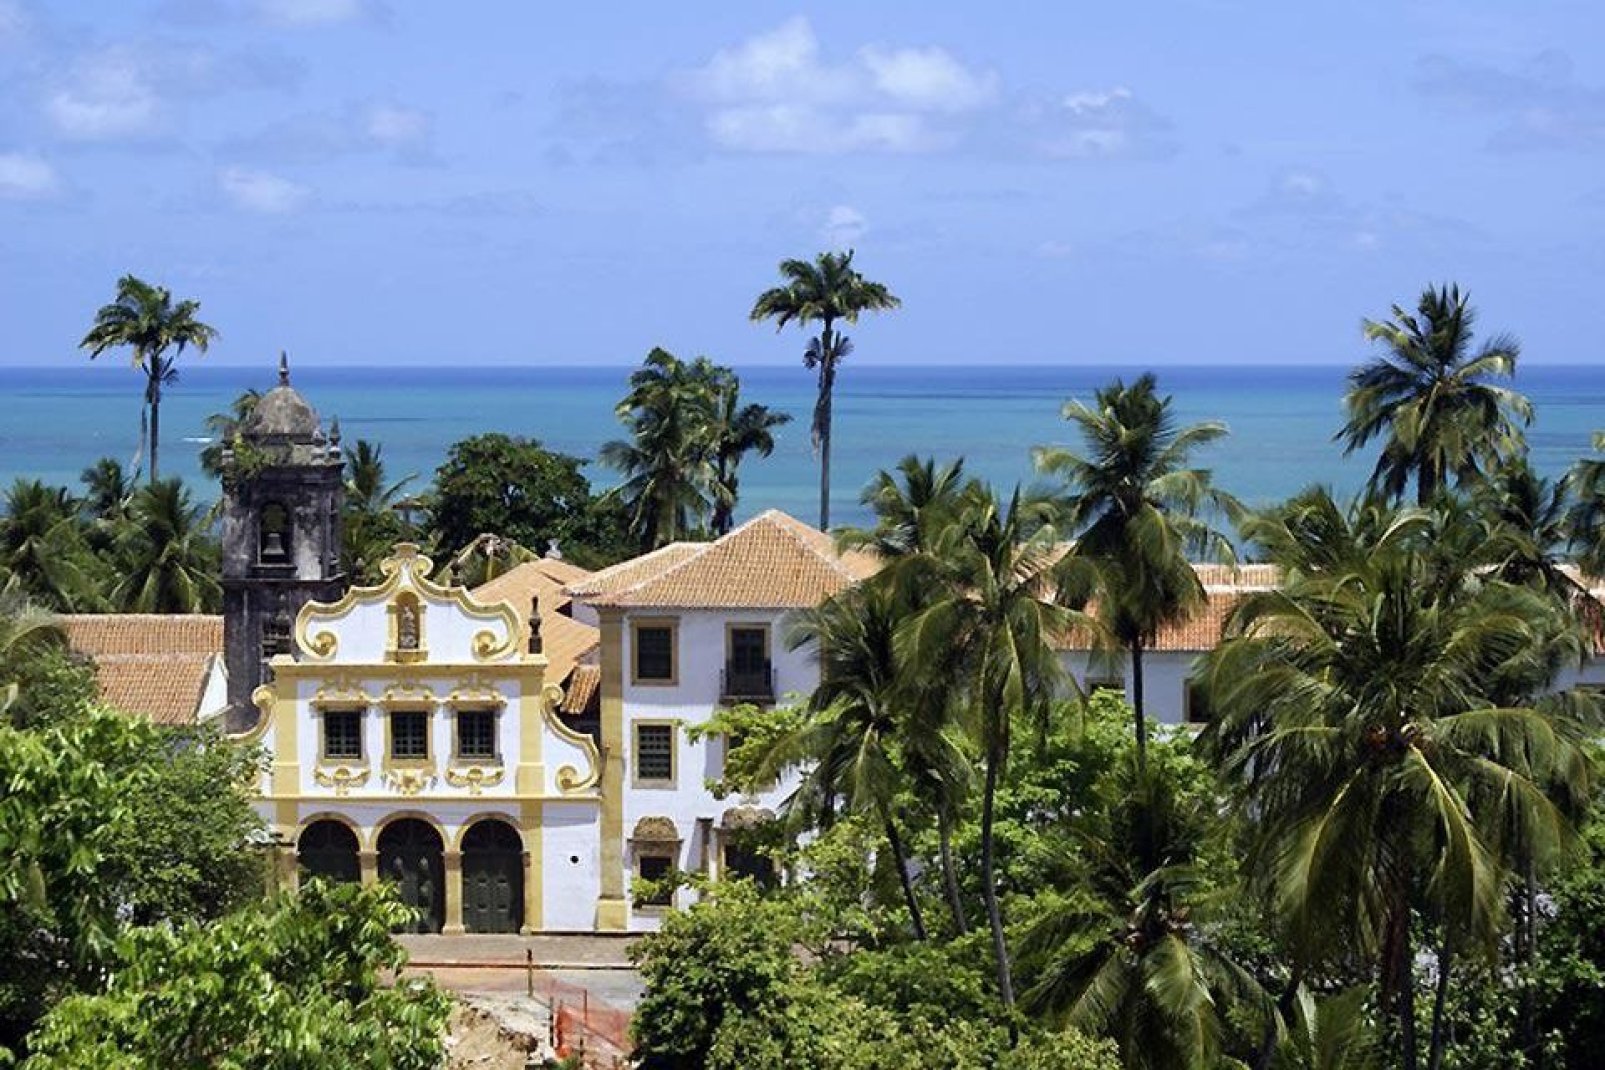 Diese portugiesische Kolonialstadt gehört zu den ältesten Städten von ganz Brasilien.